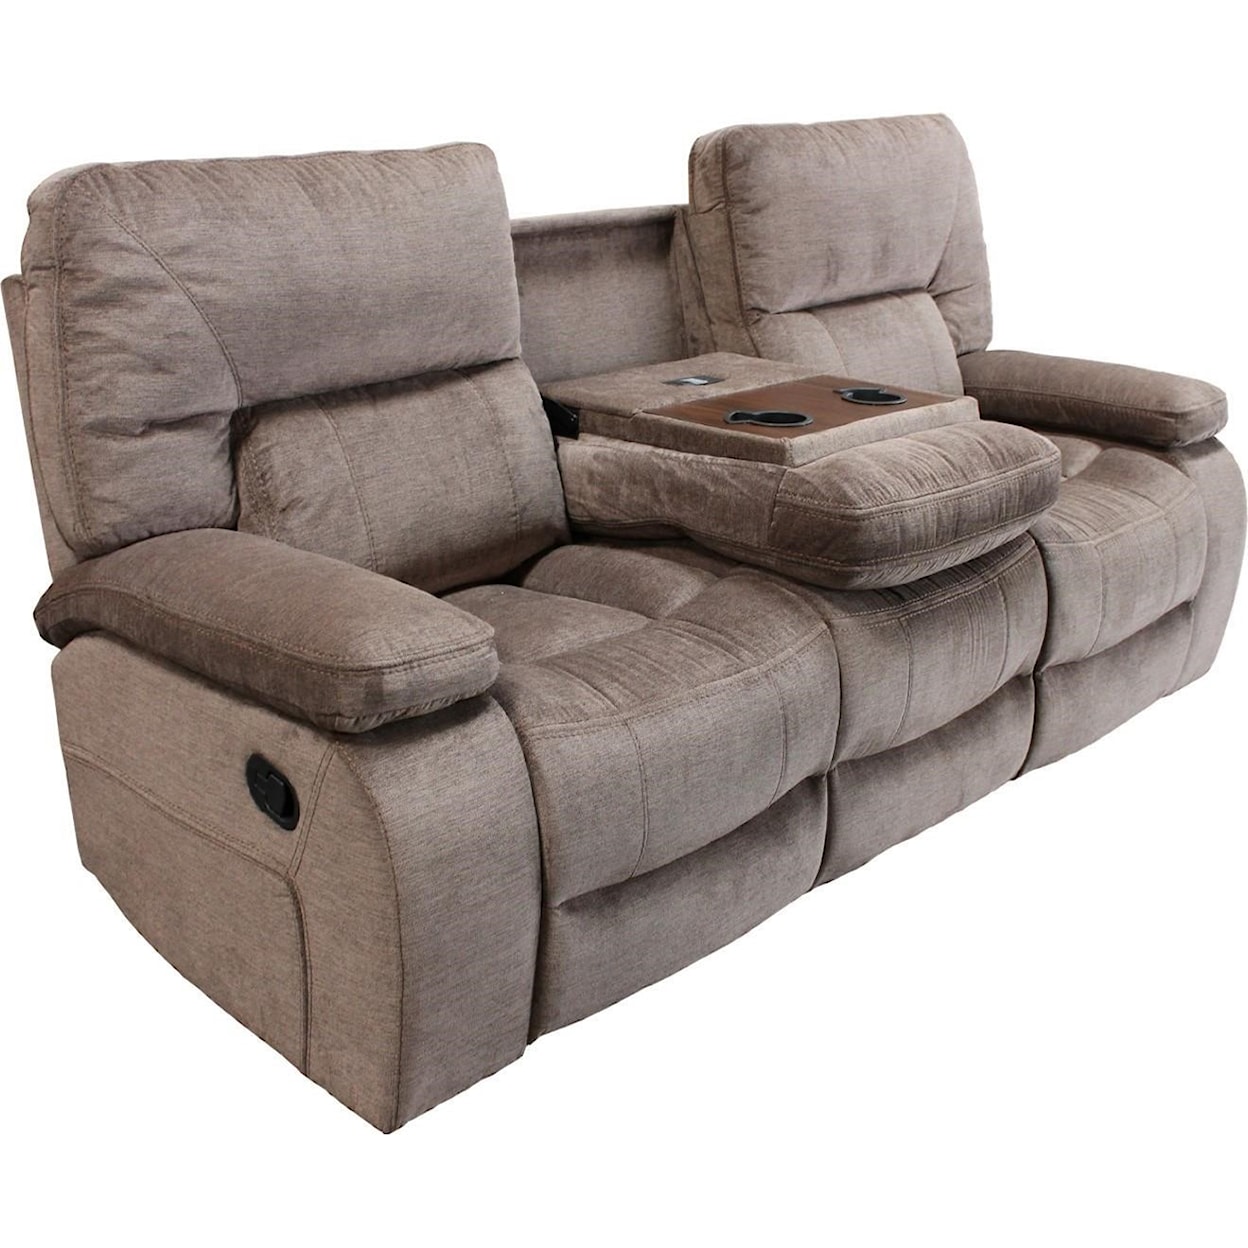 Carolina Living Chapman Dual Reclining Sofa with Drop Down Console